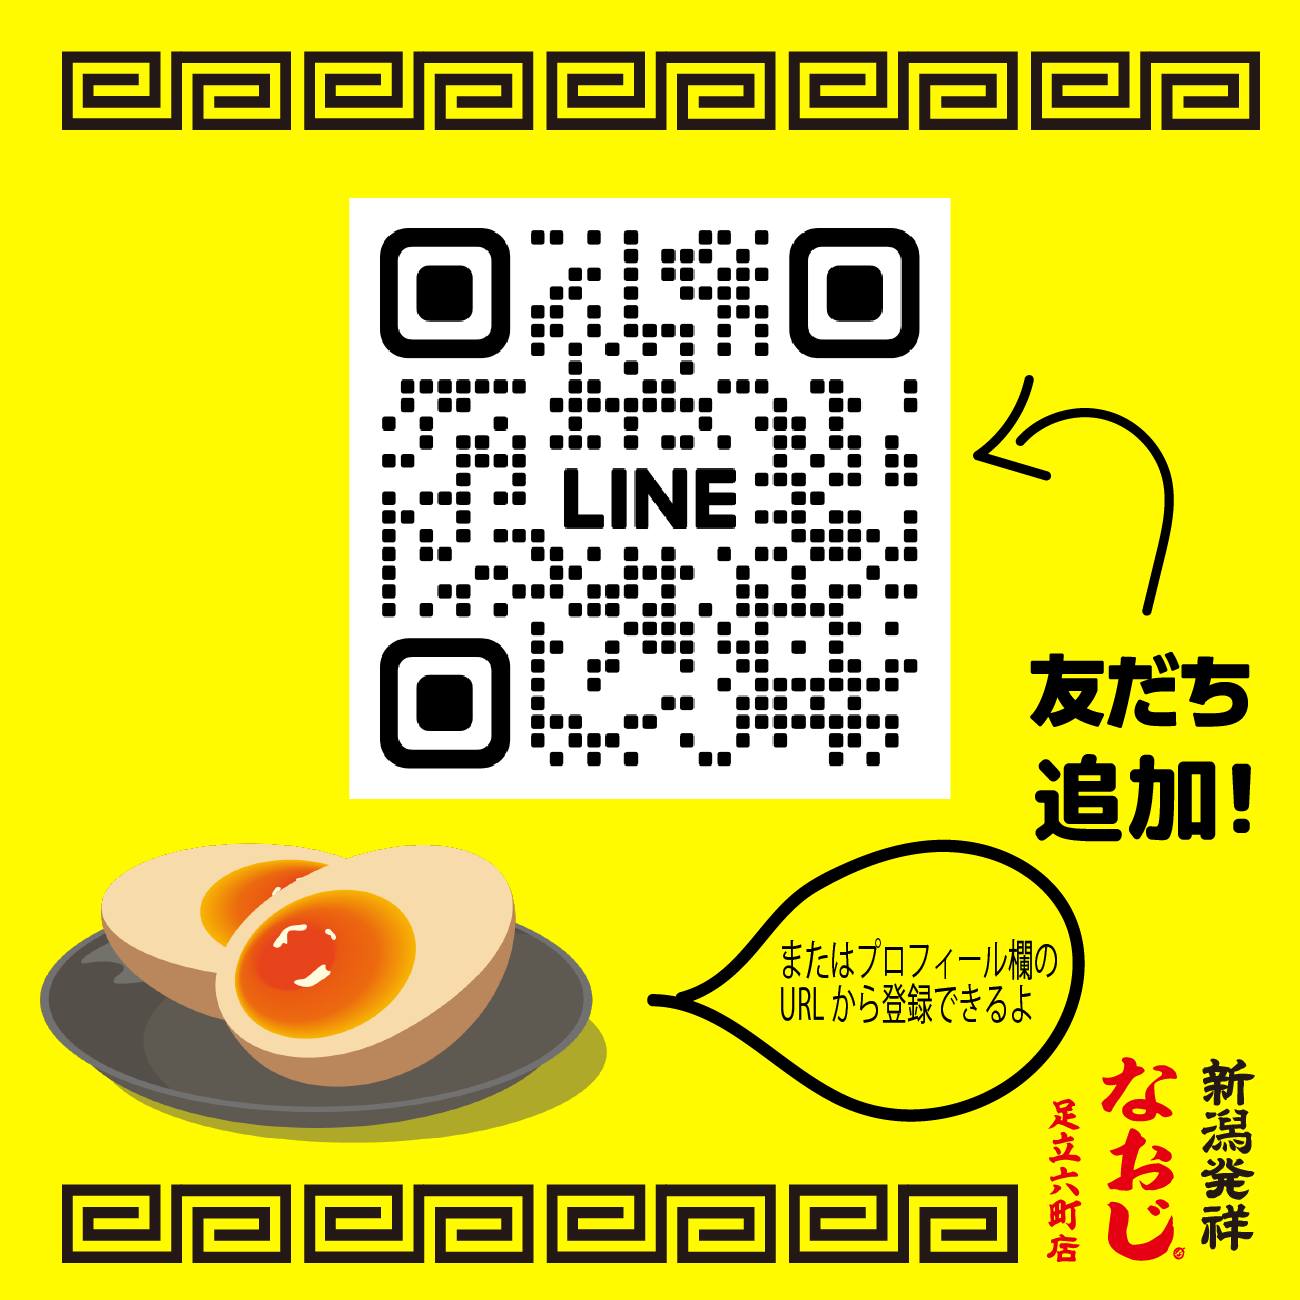 【足立六町店】LINEの友だち限定クーポン発行